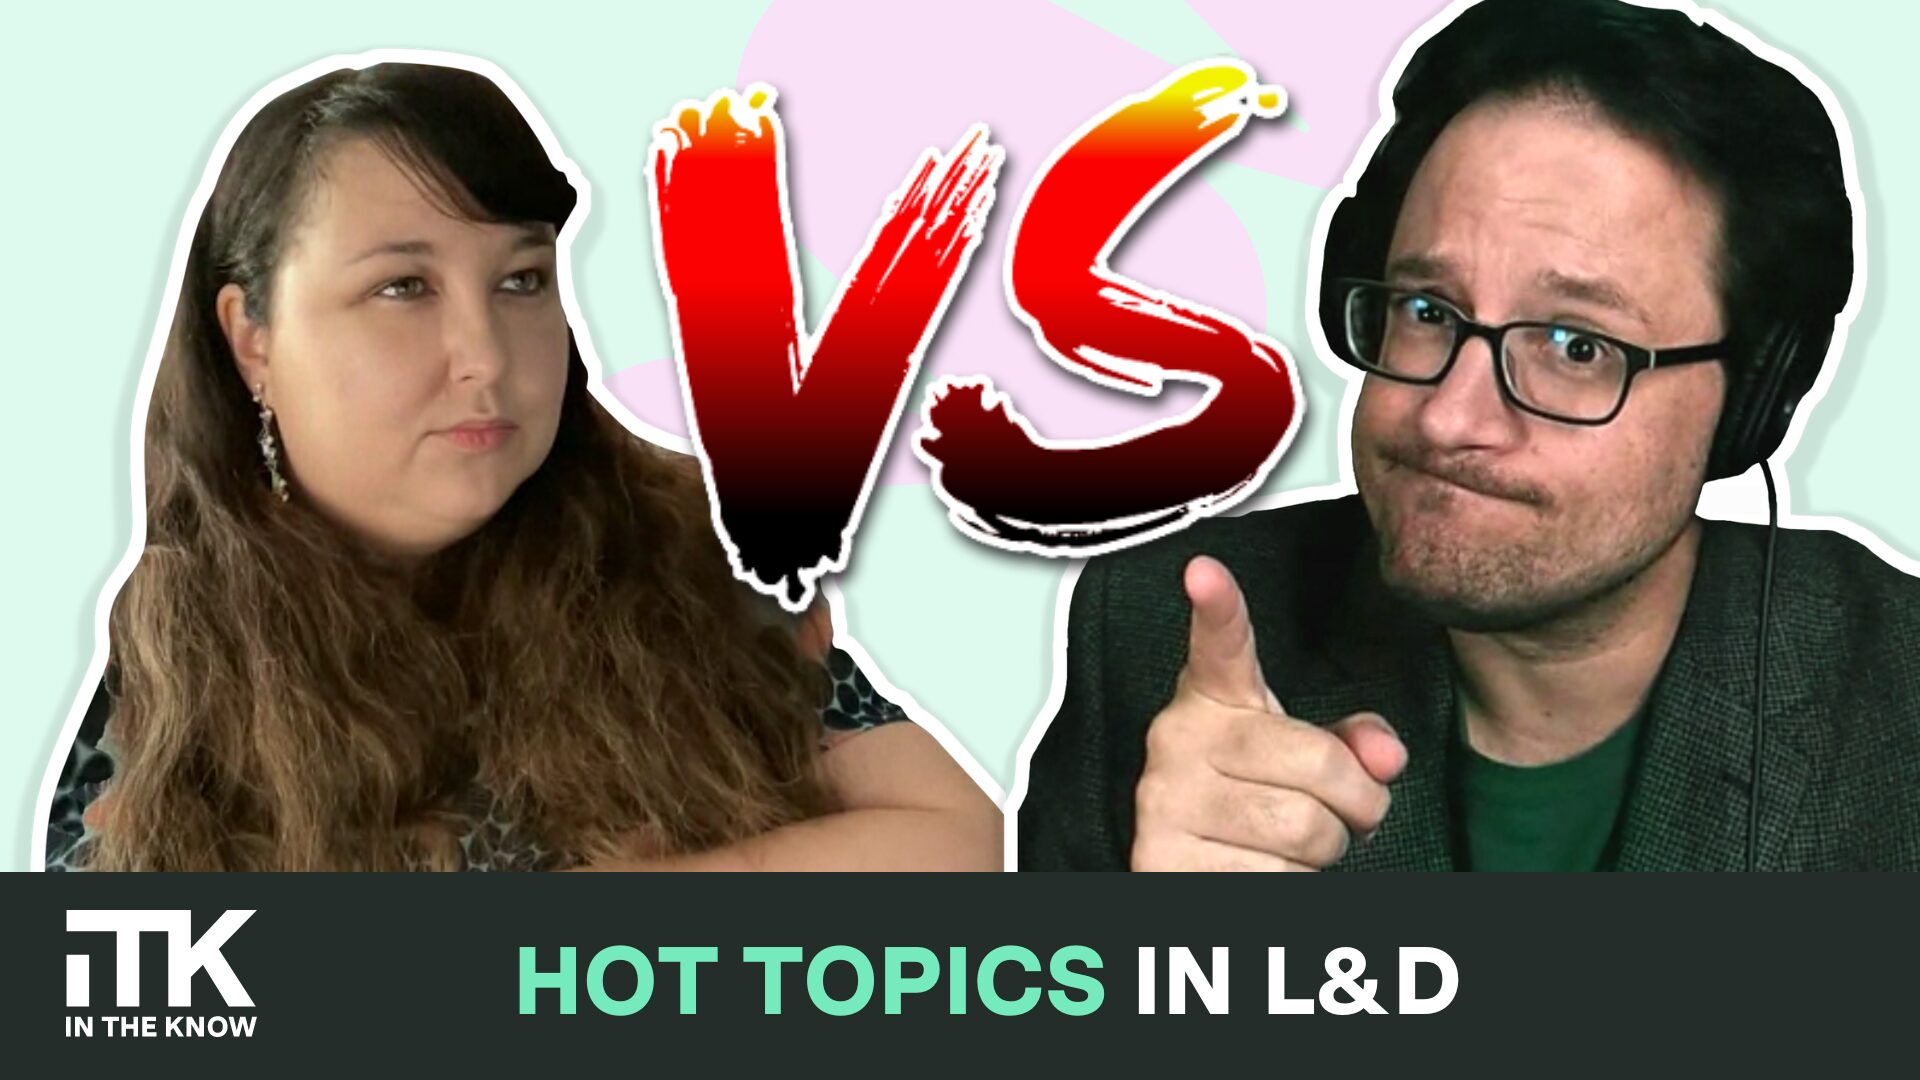 Hot topics in L&D